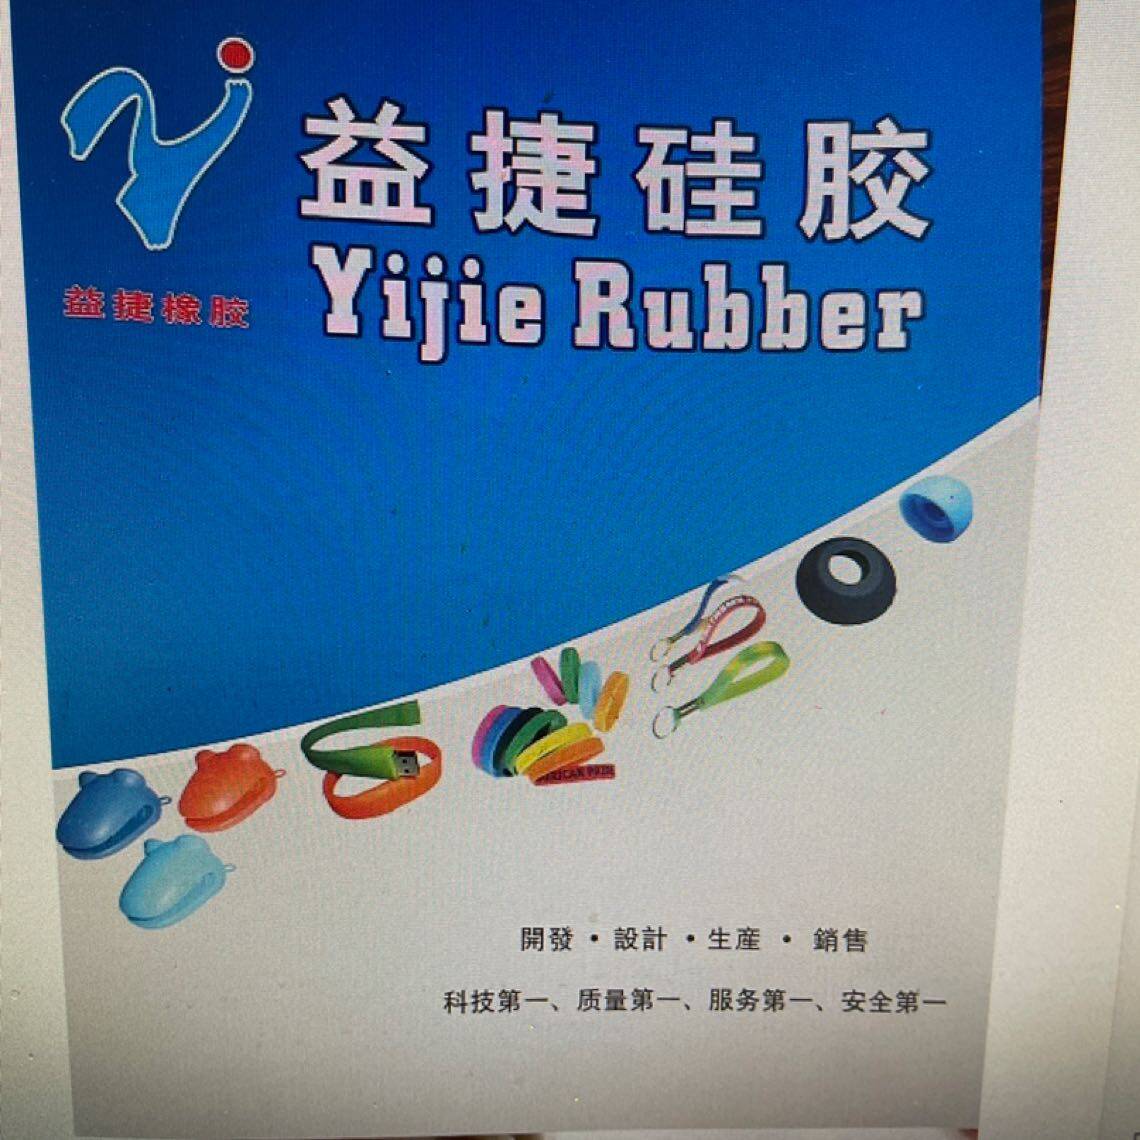 东莞市益捷硅橡胶制品有限公司logo